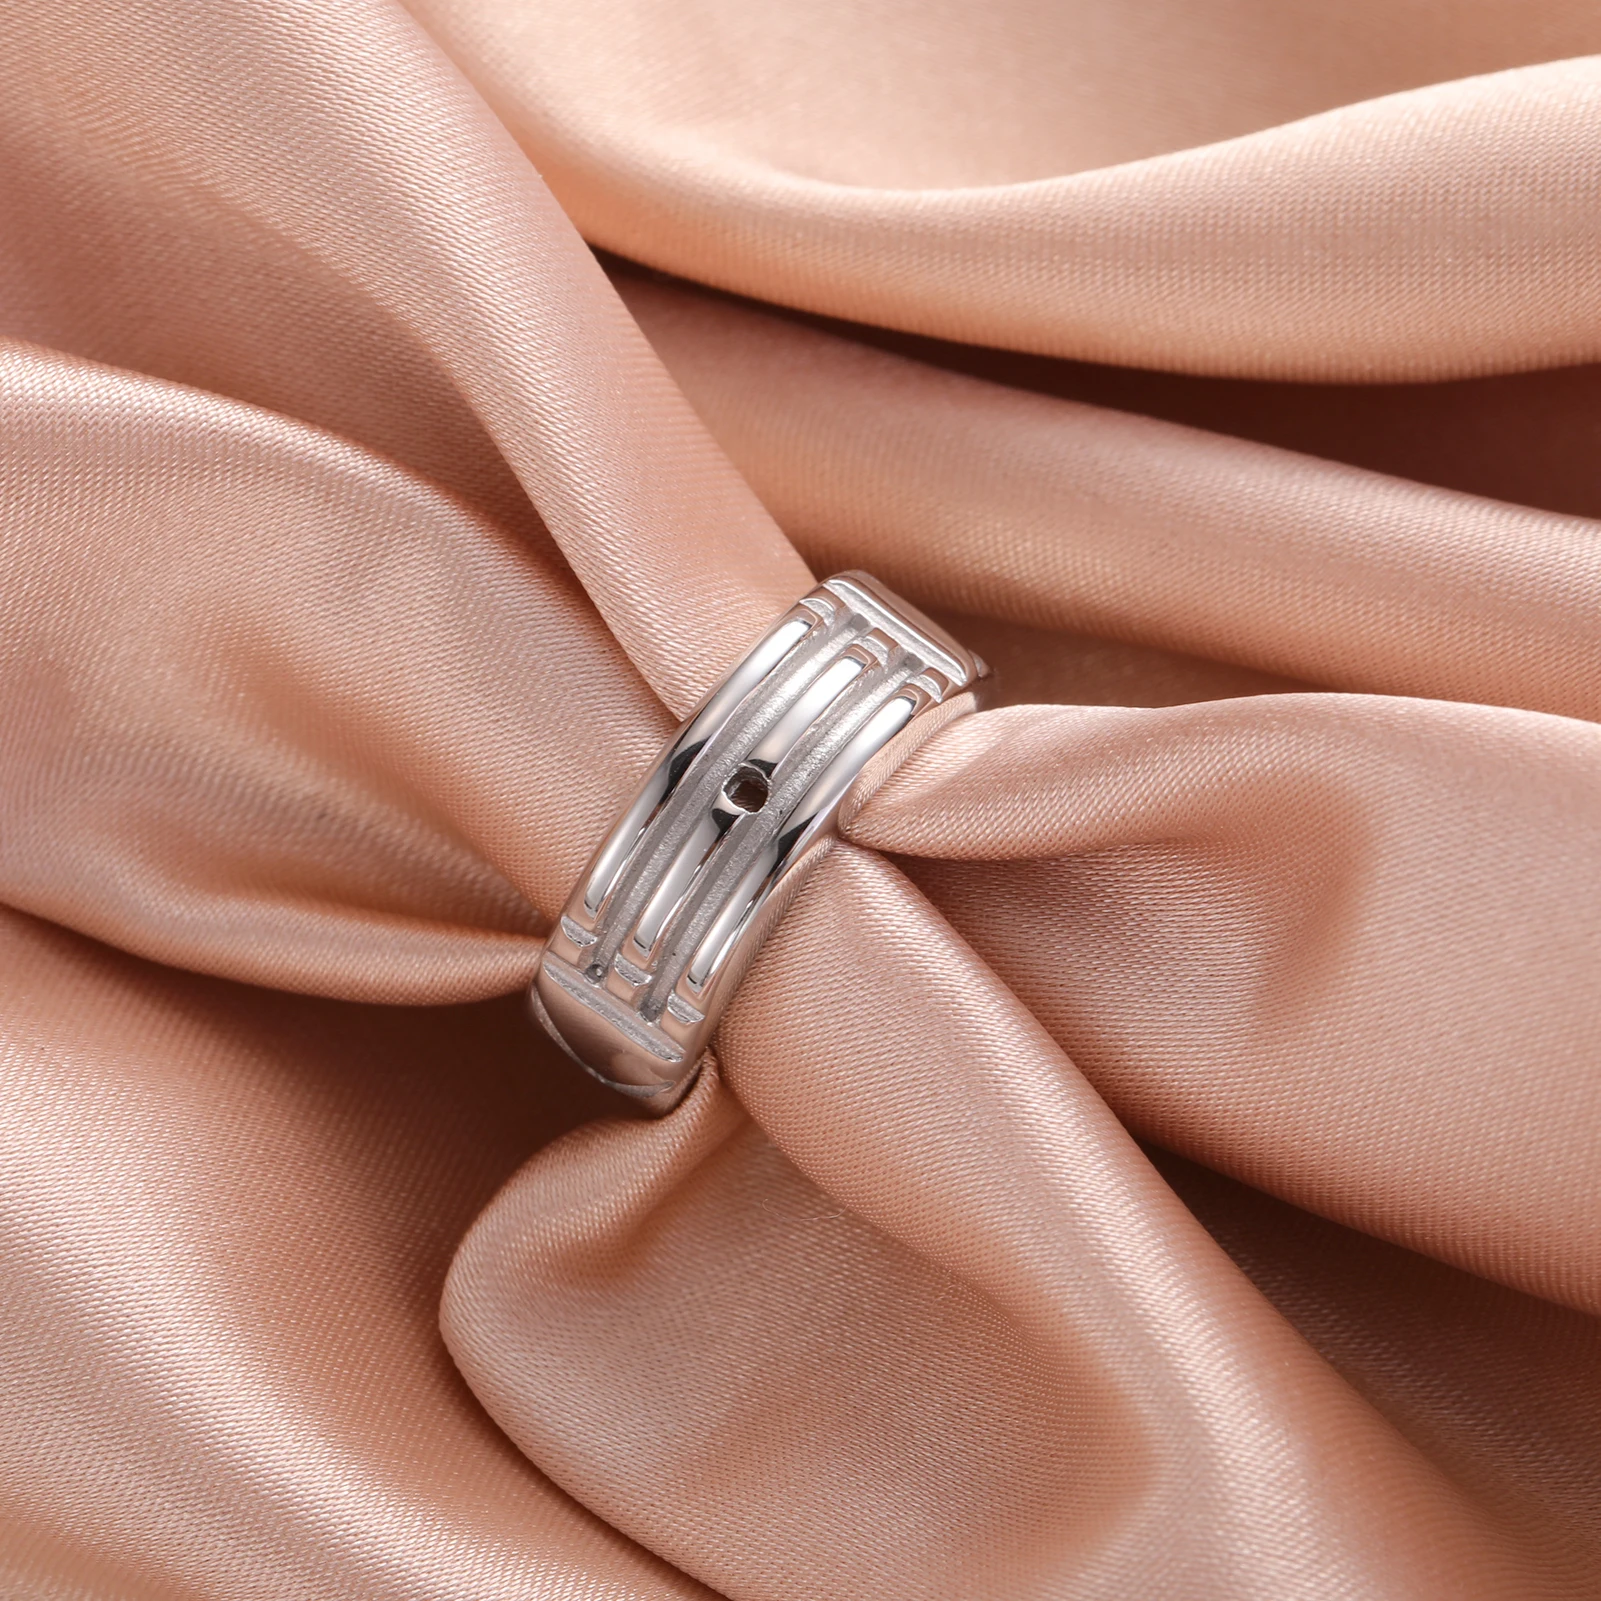 Teamer-anillo ancho geométrico de acero inoxidable para hombre y mujer, sortija de compromiso minimalista a la moda, Color plateado